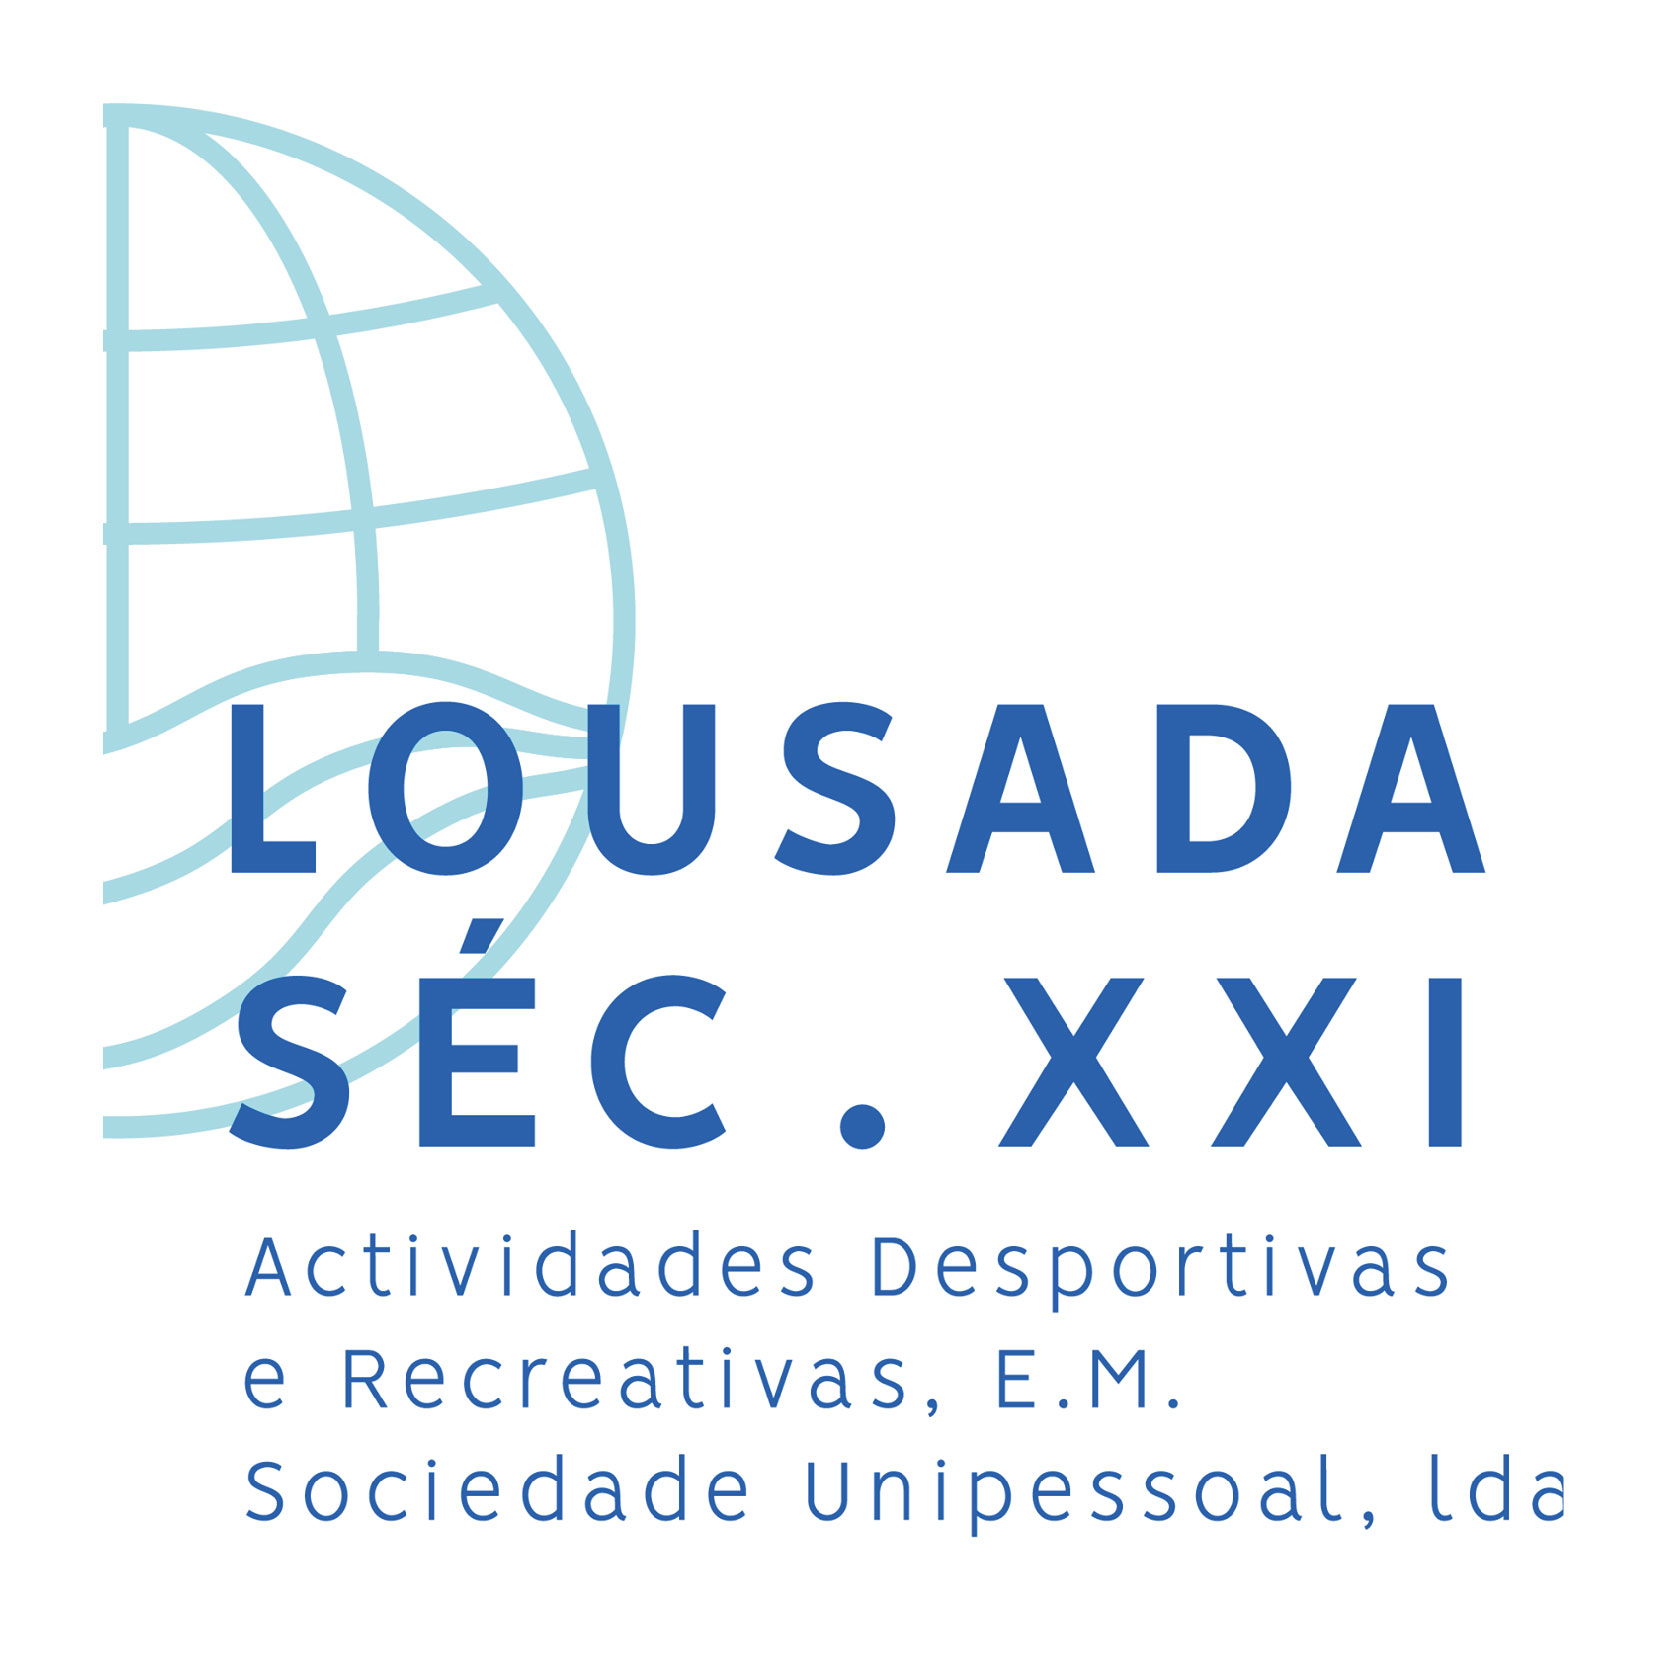 Lousada Século XXI - Actividades Desportivas e Recreativas, E.M.